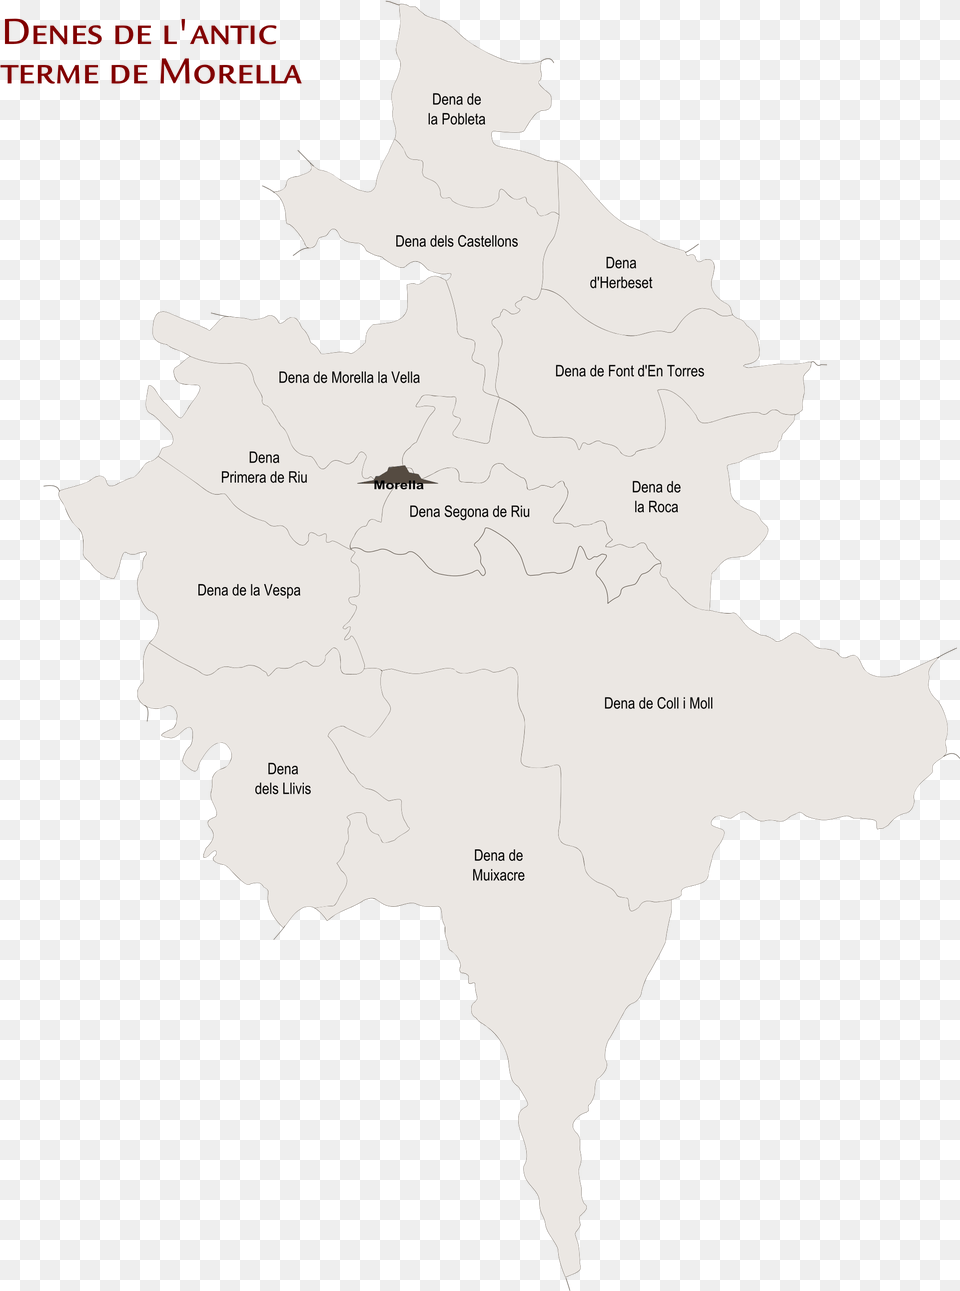 Open La Pobleta De Morella, Atlas, Chart, Diagram, Plot Png